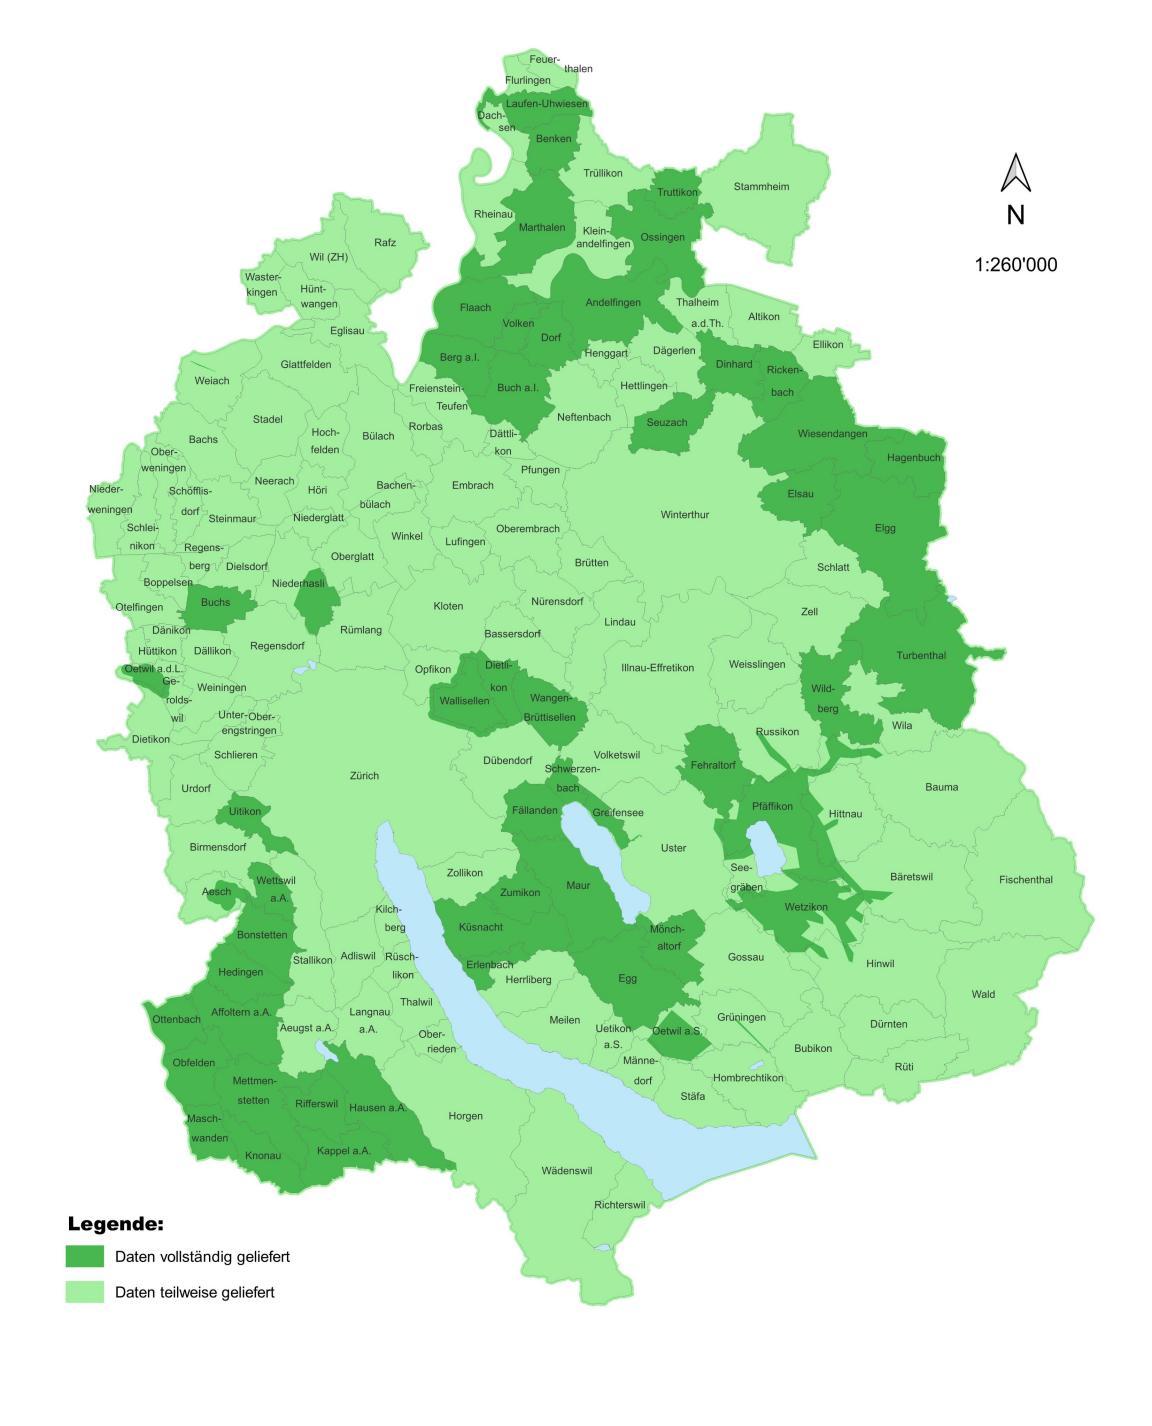 Karte des Kantons Zürich mit den eingezeichneten Gemeinden. In Dunkelgrün diejenigen, die die Daten im Bereich Kommunikation bereits vollständig geliefert haben, in Hellgrün die Gemeinden, die die Daten bloss teilweise geliefert haben. 